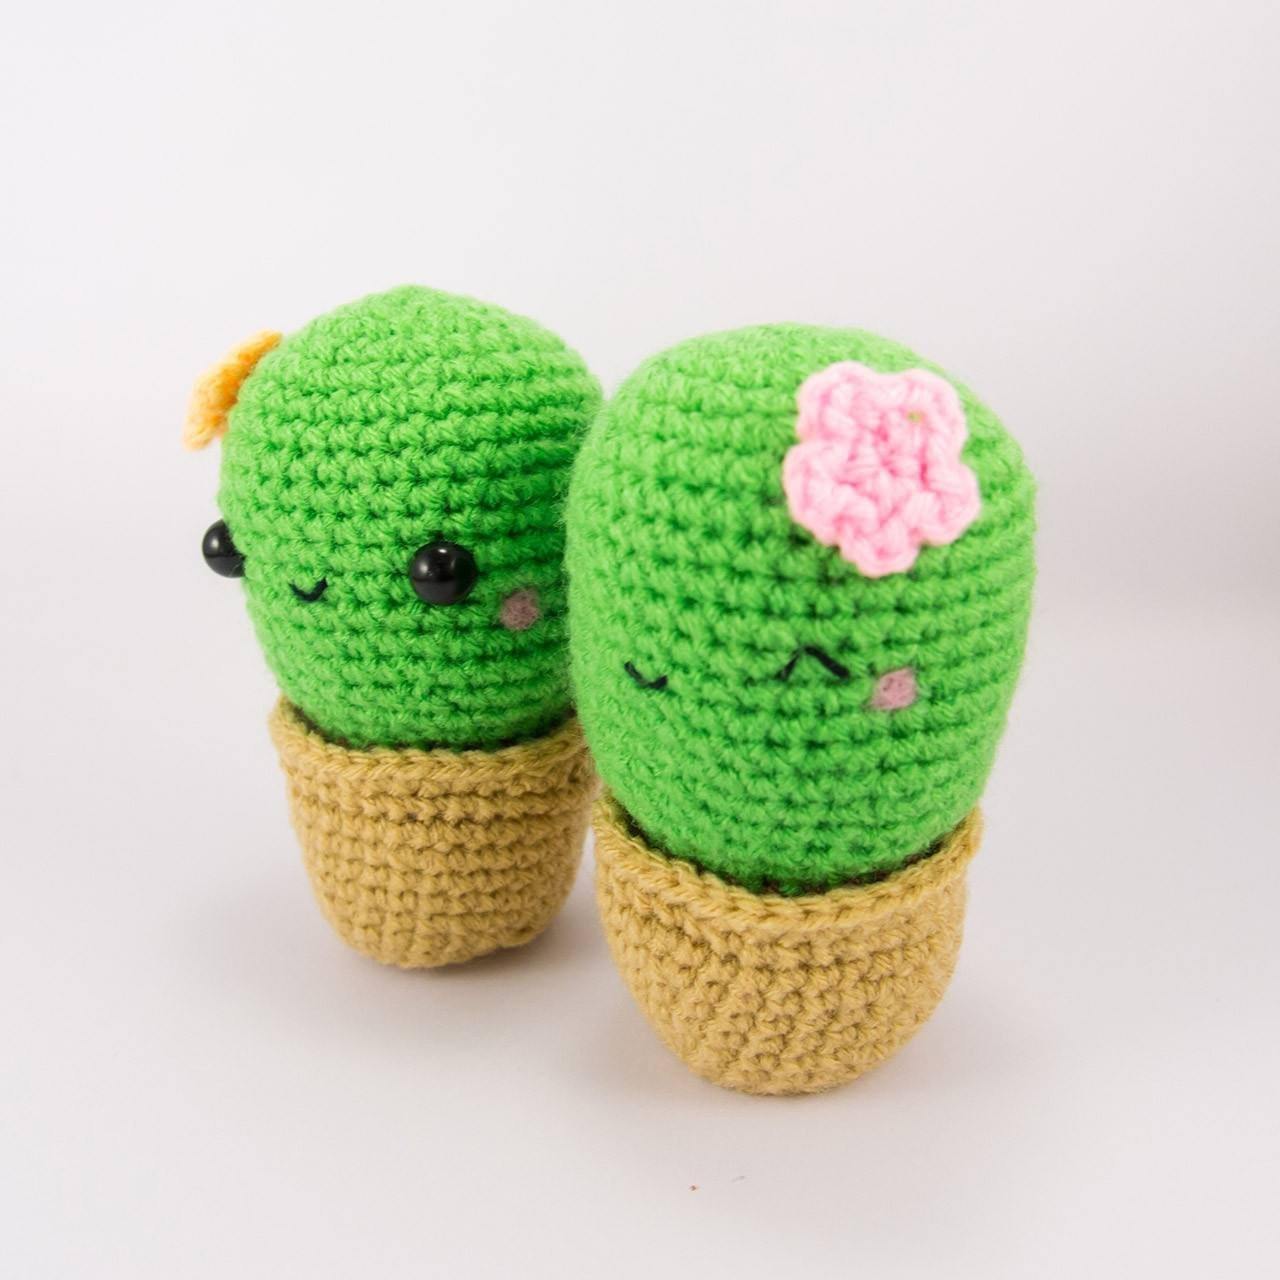 crochet cactus amigurumi - 2 cactus